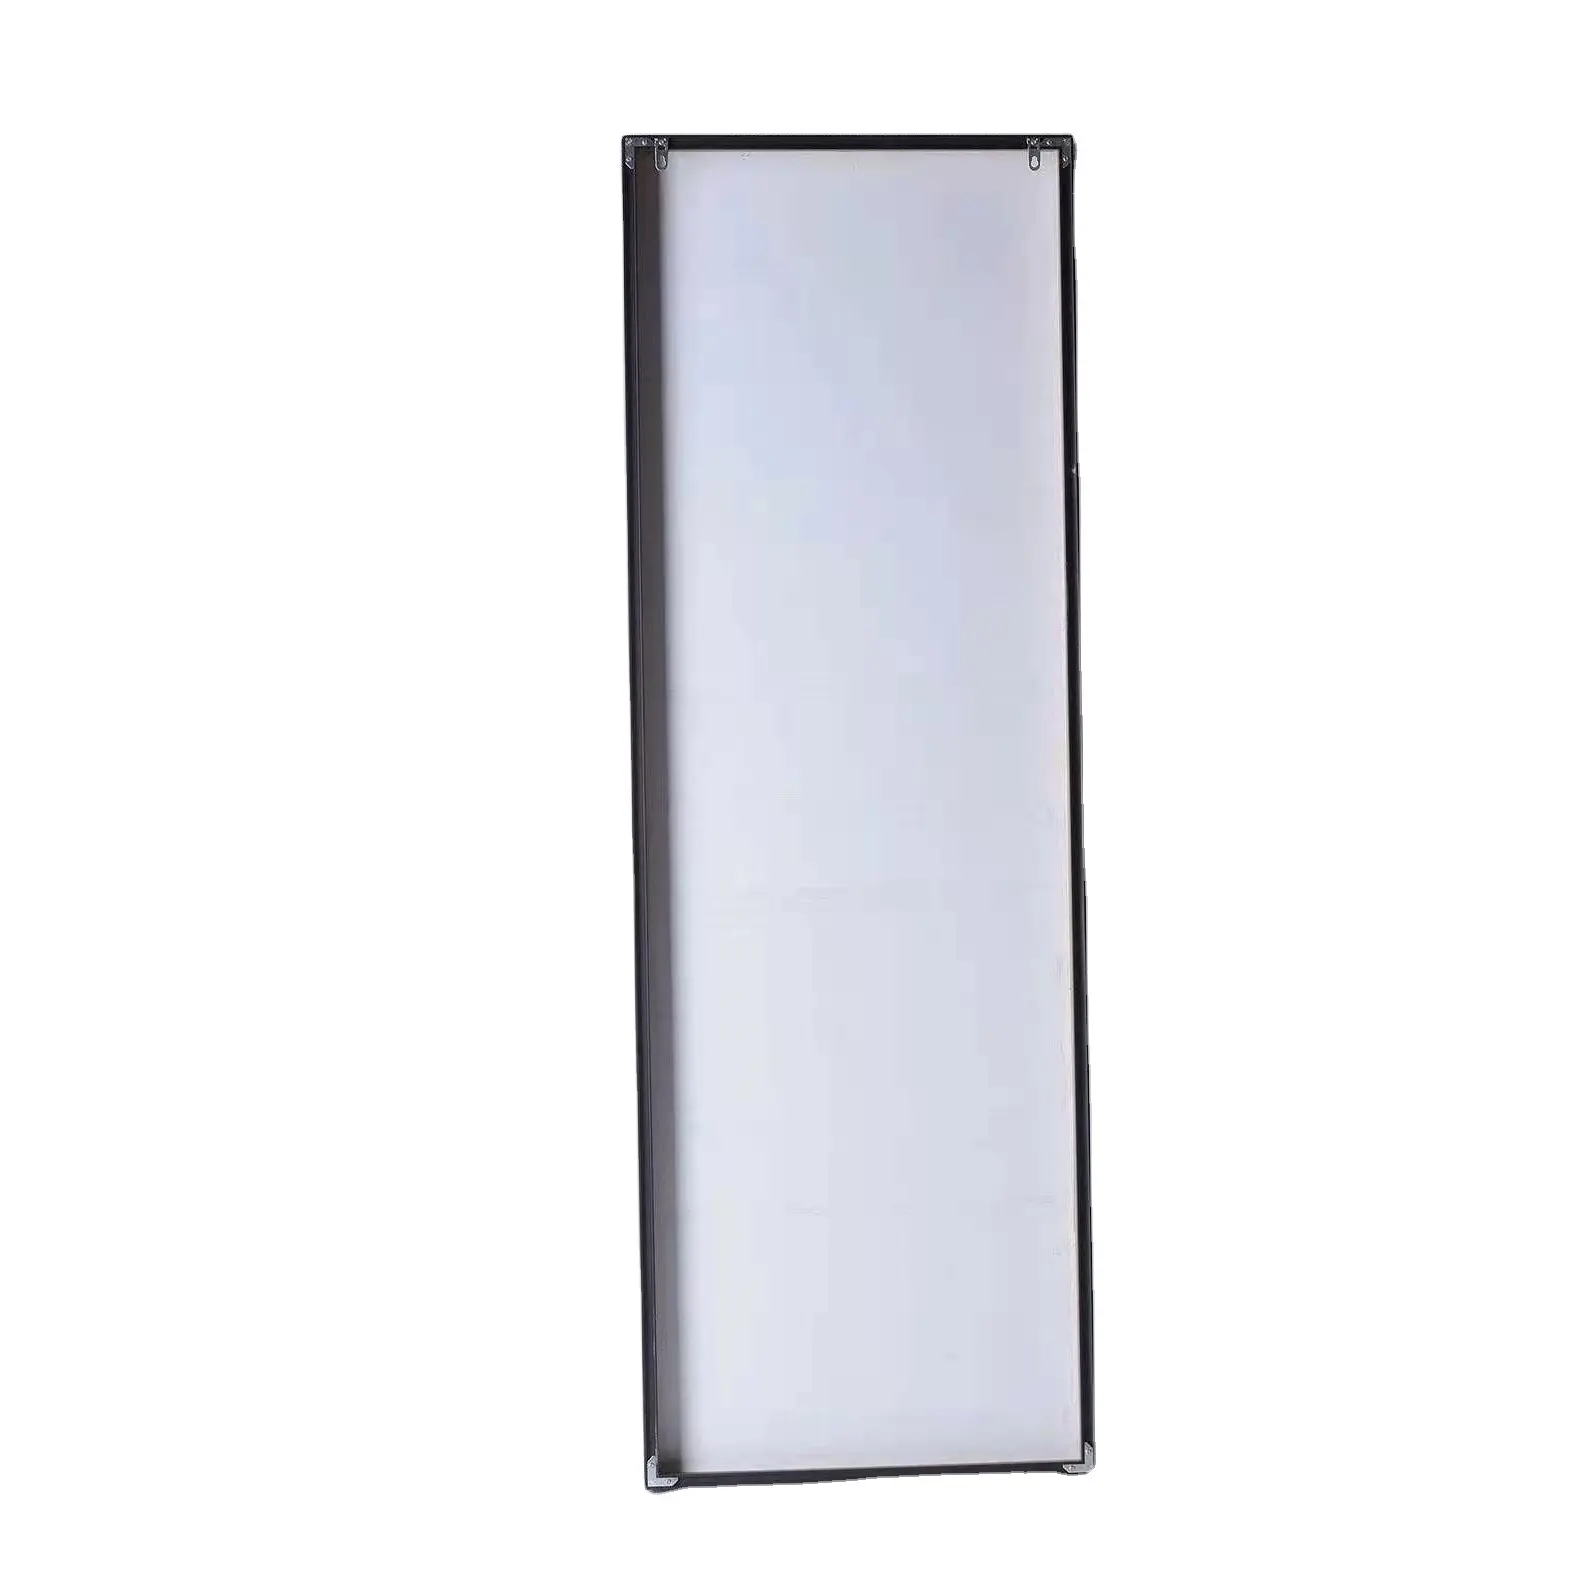 Miroir ovale en alliage d'aluminium, miroir de maquillage, miroir de salle de bain, miroir mural suspendu pour hôtel